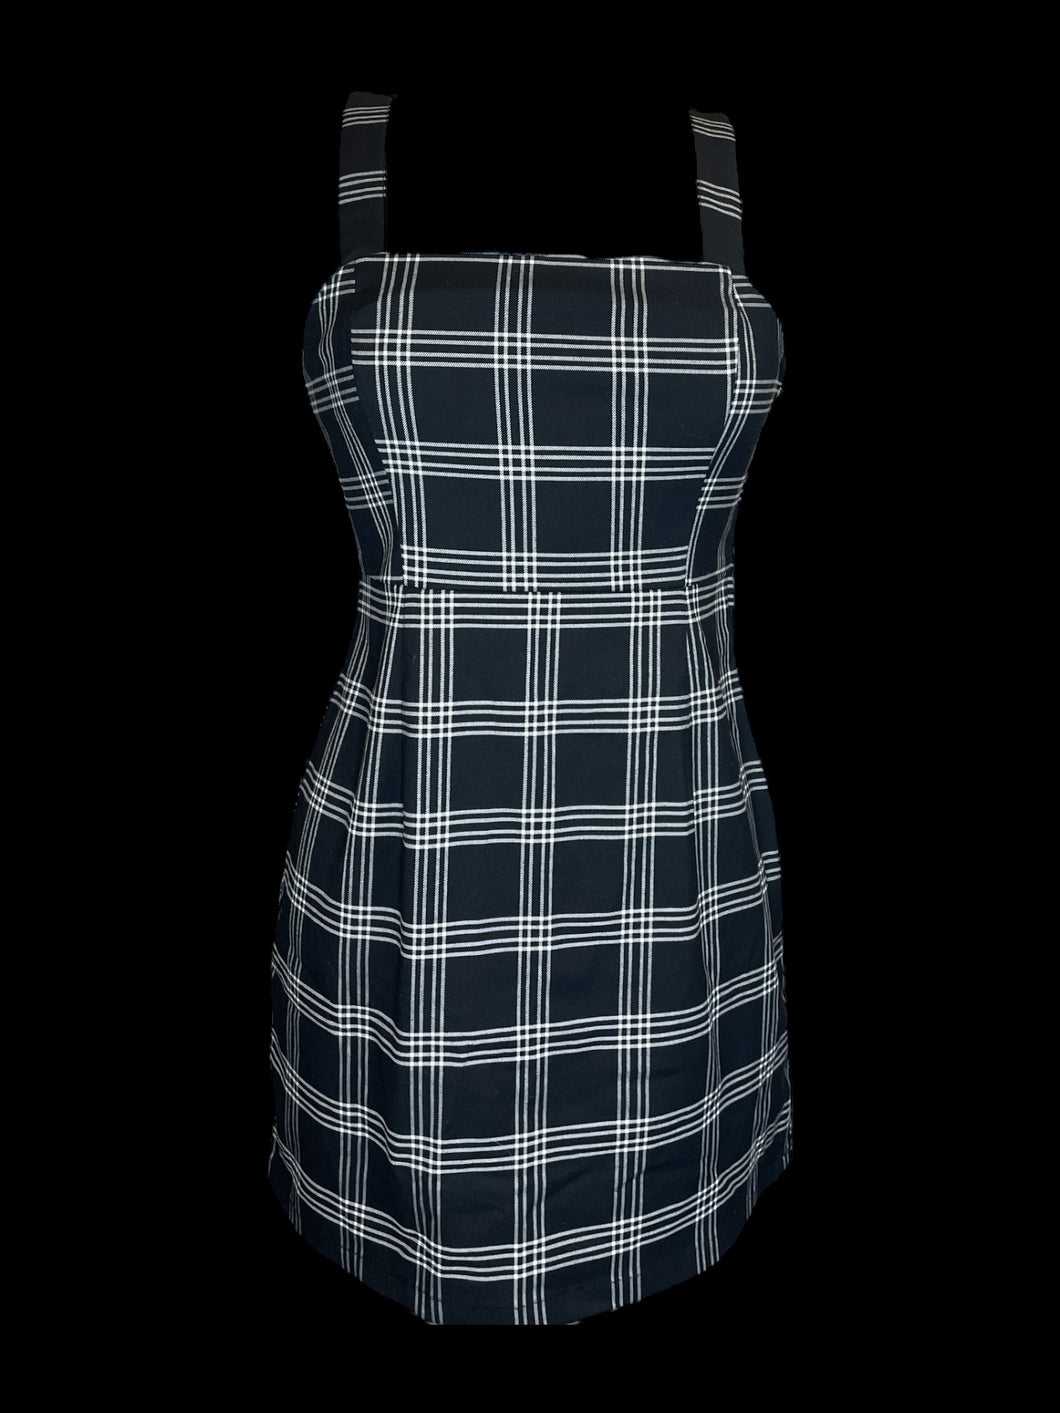 S Black & white gingham sleevless dress w/ back zipper closure